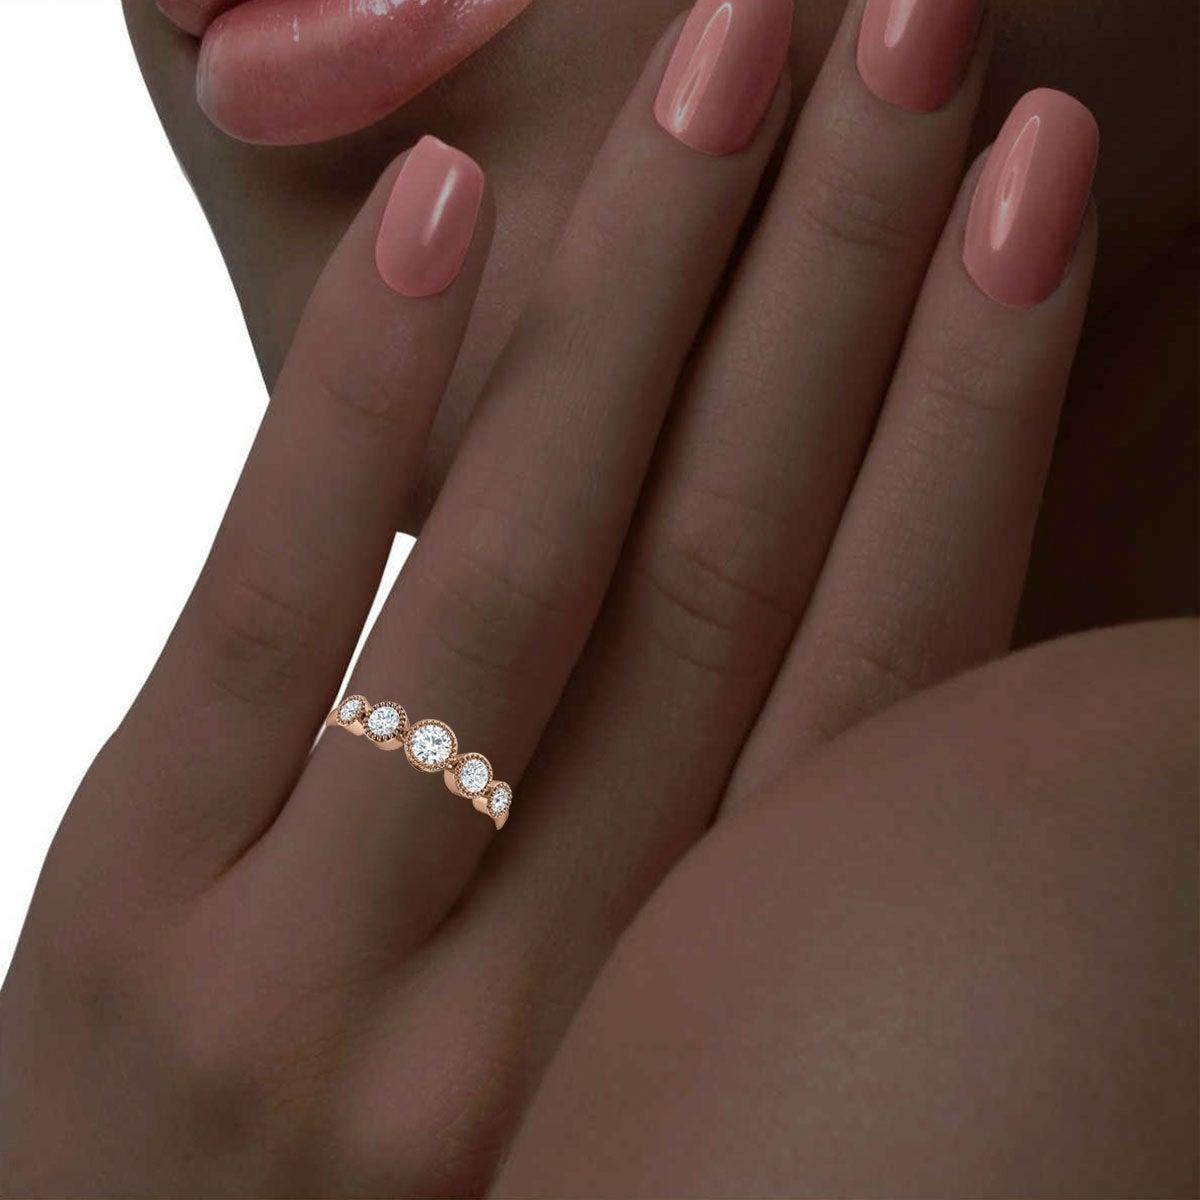 For Sale:  14K Rose Gold Augusta Bezel Milgrain Diamond Ring '2/5 ct. tw' 4